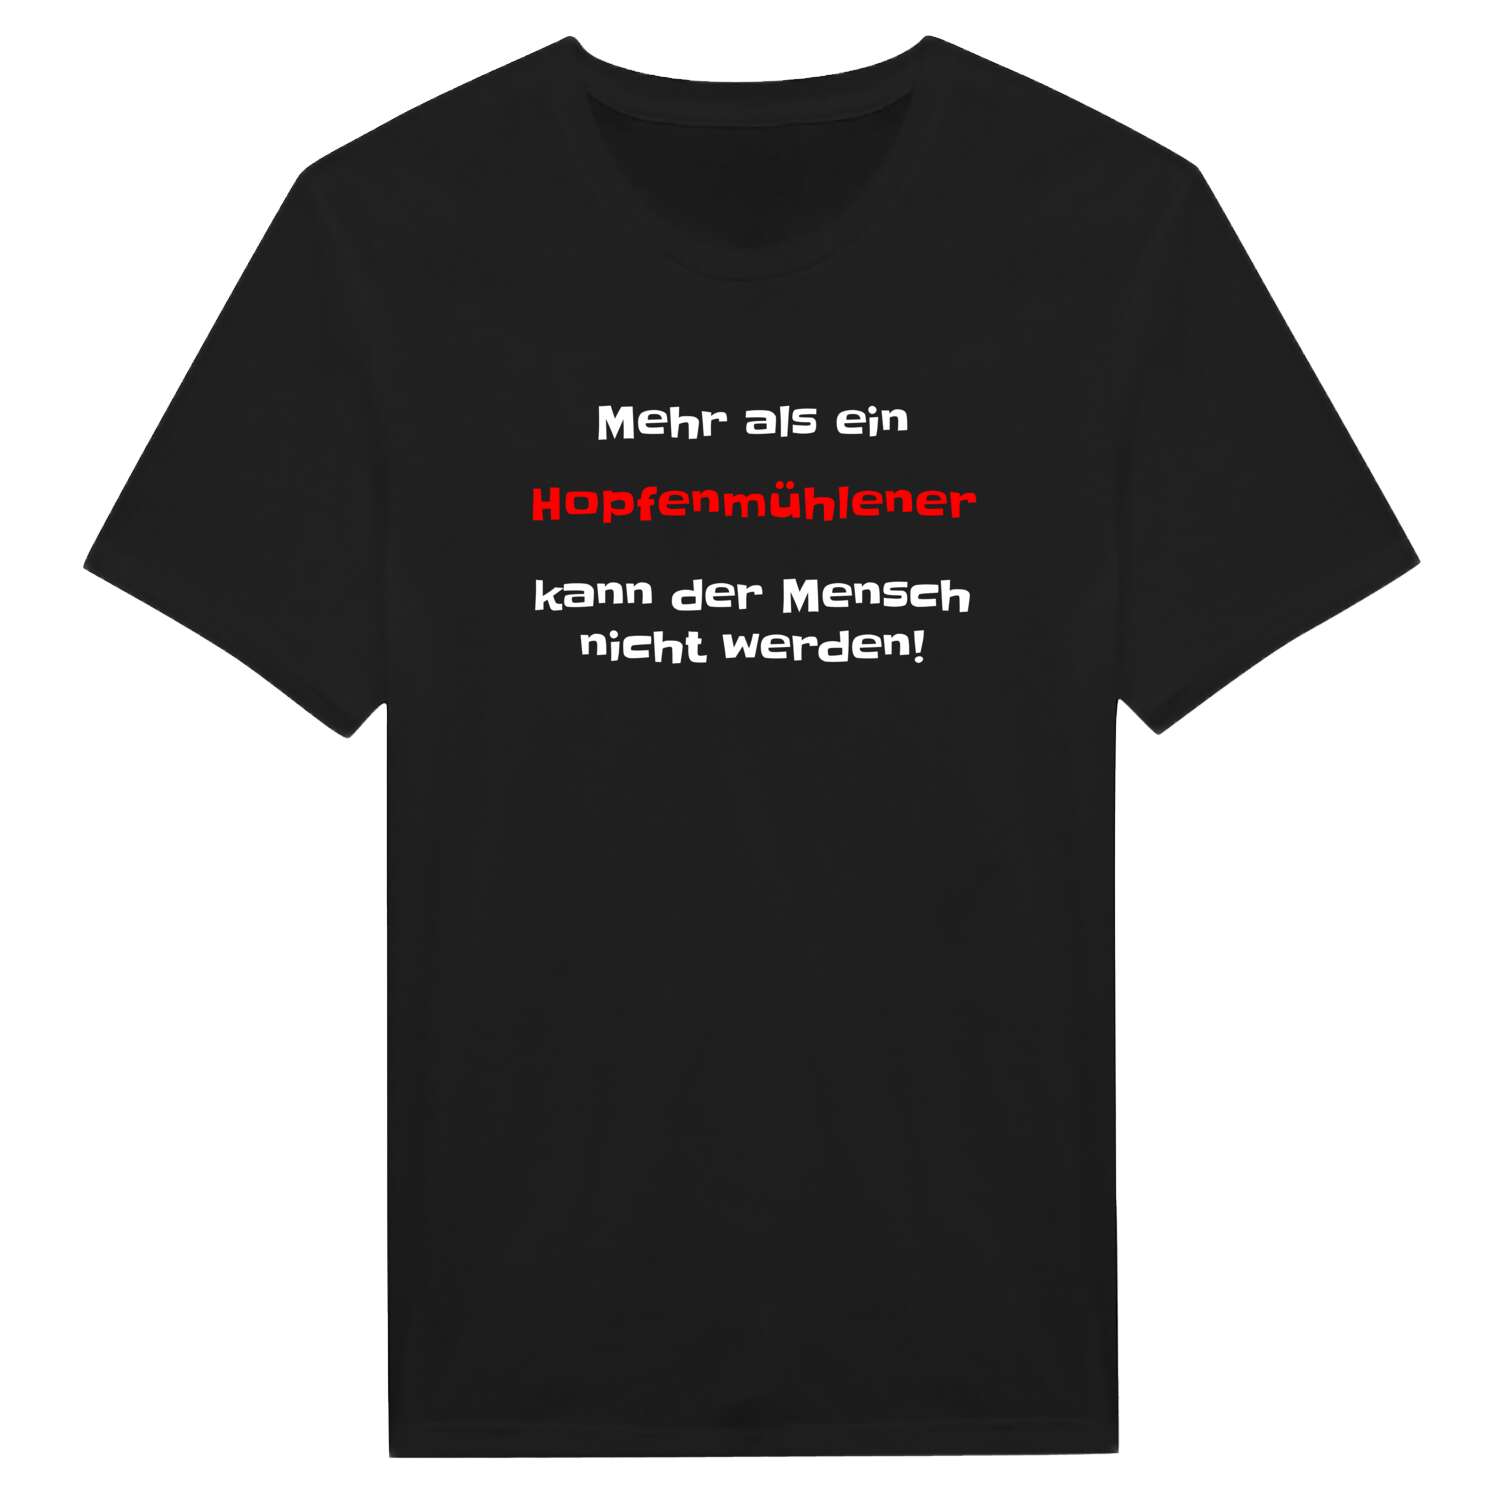 Hopfenmühle T-Shirt »Mehr als ein«